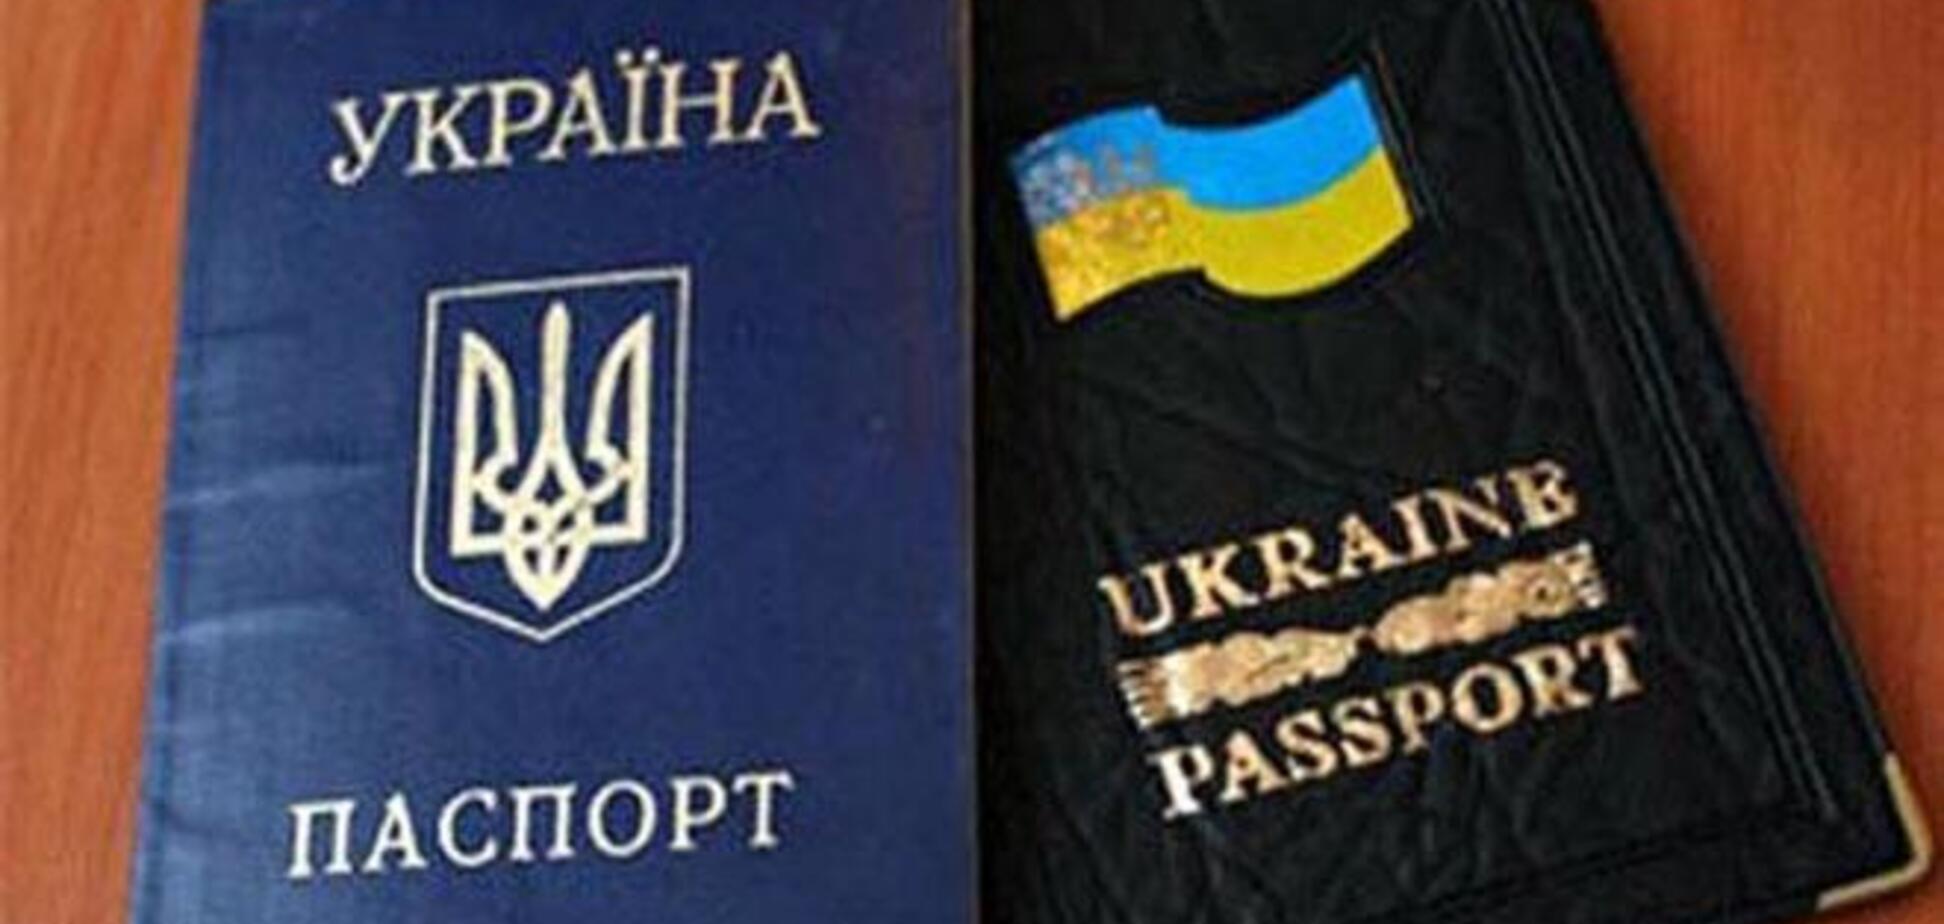 Іноземці, які претендують на посаду головного антикорупціонера, приймуть українське громадянство